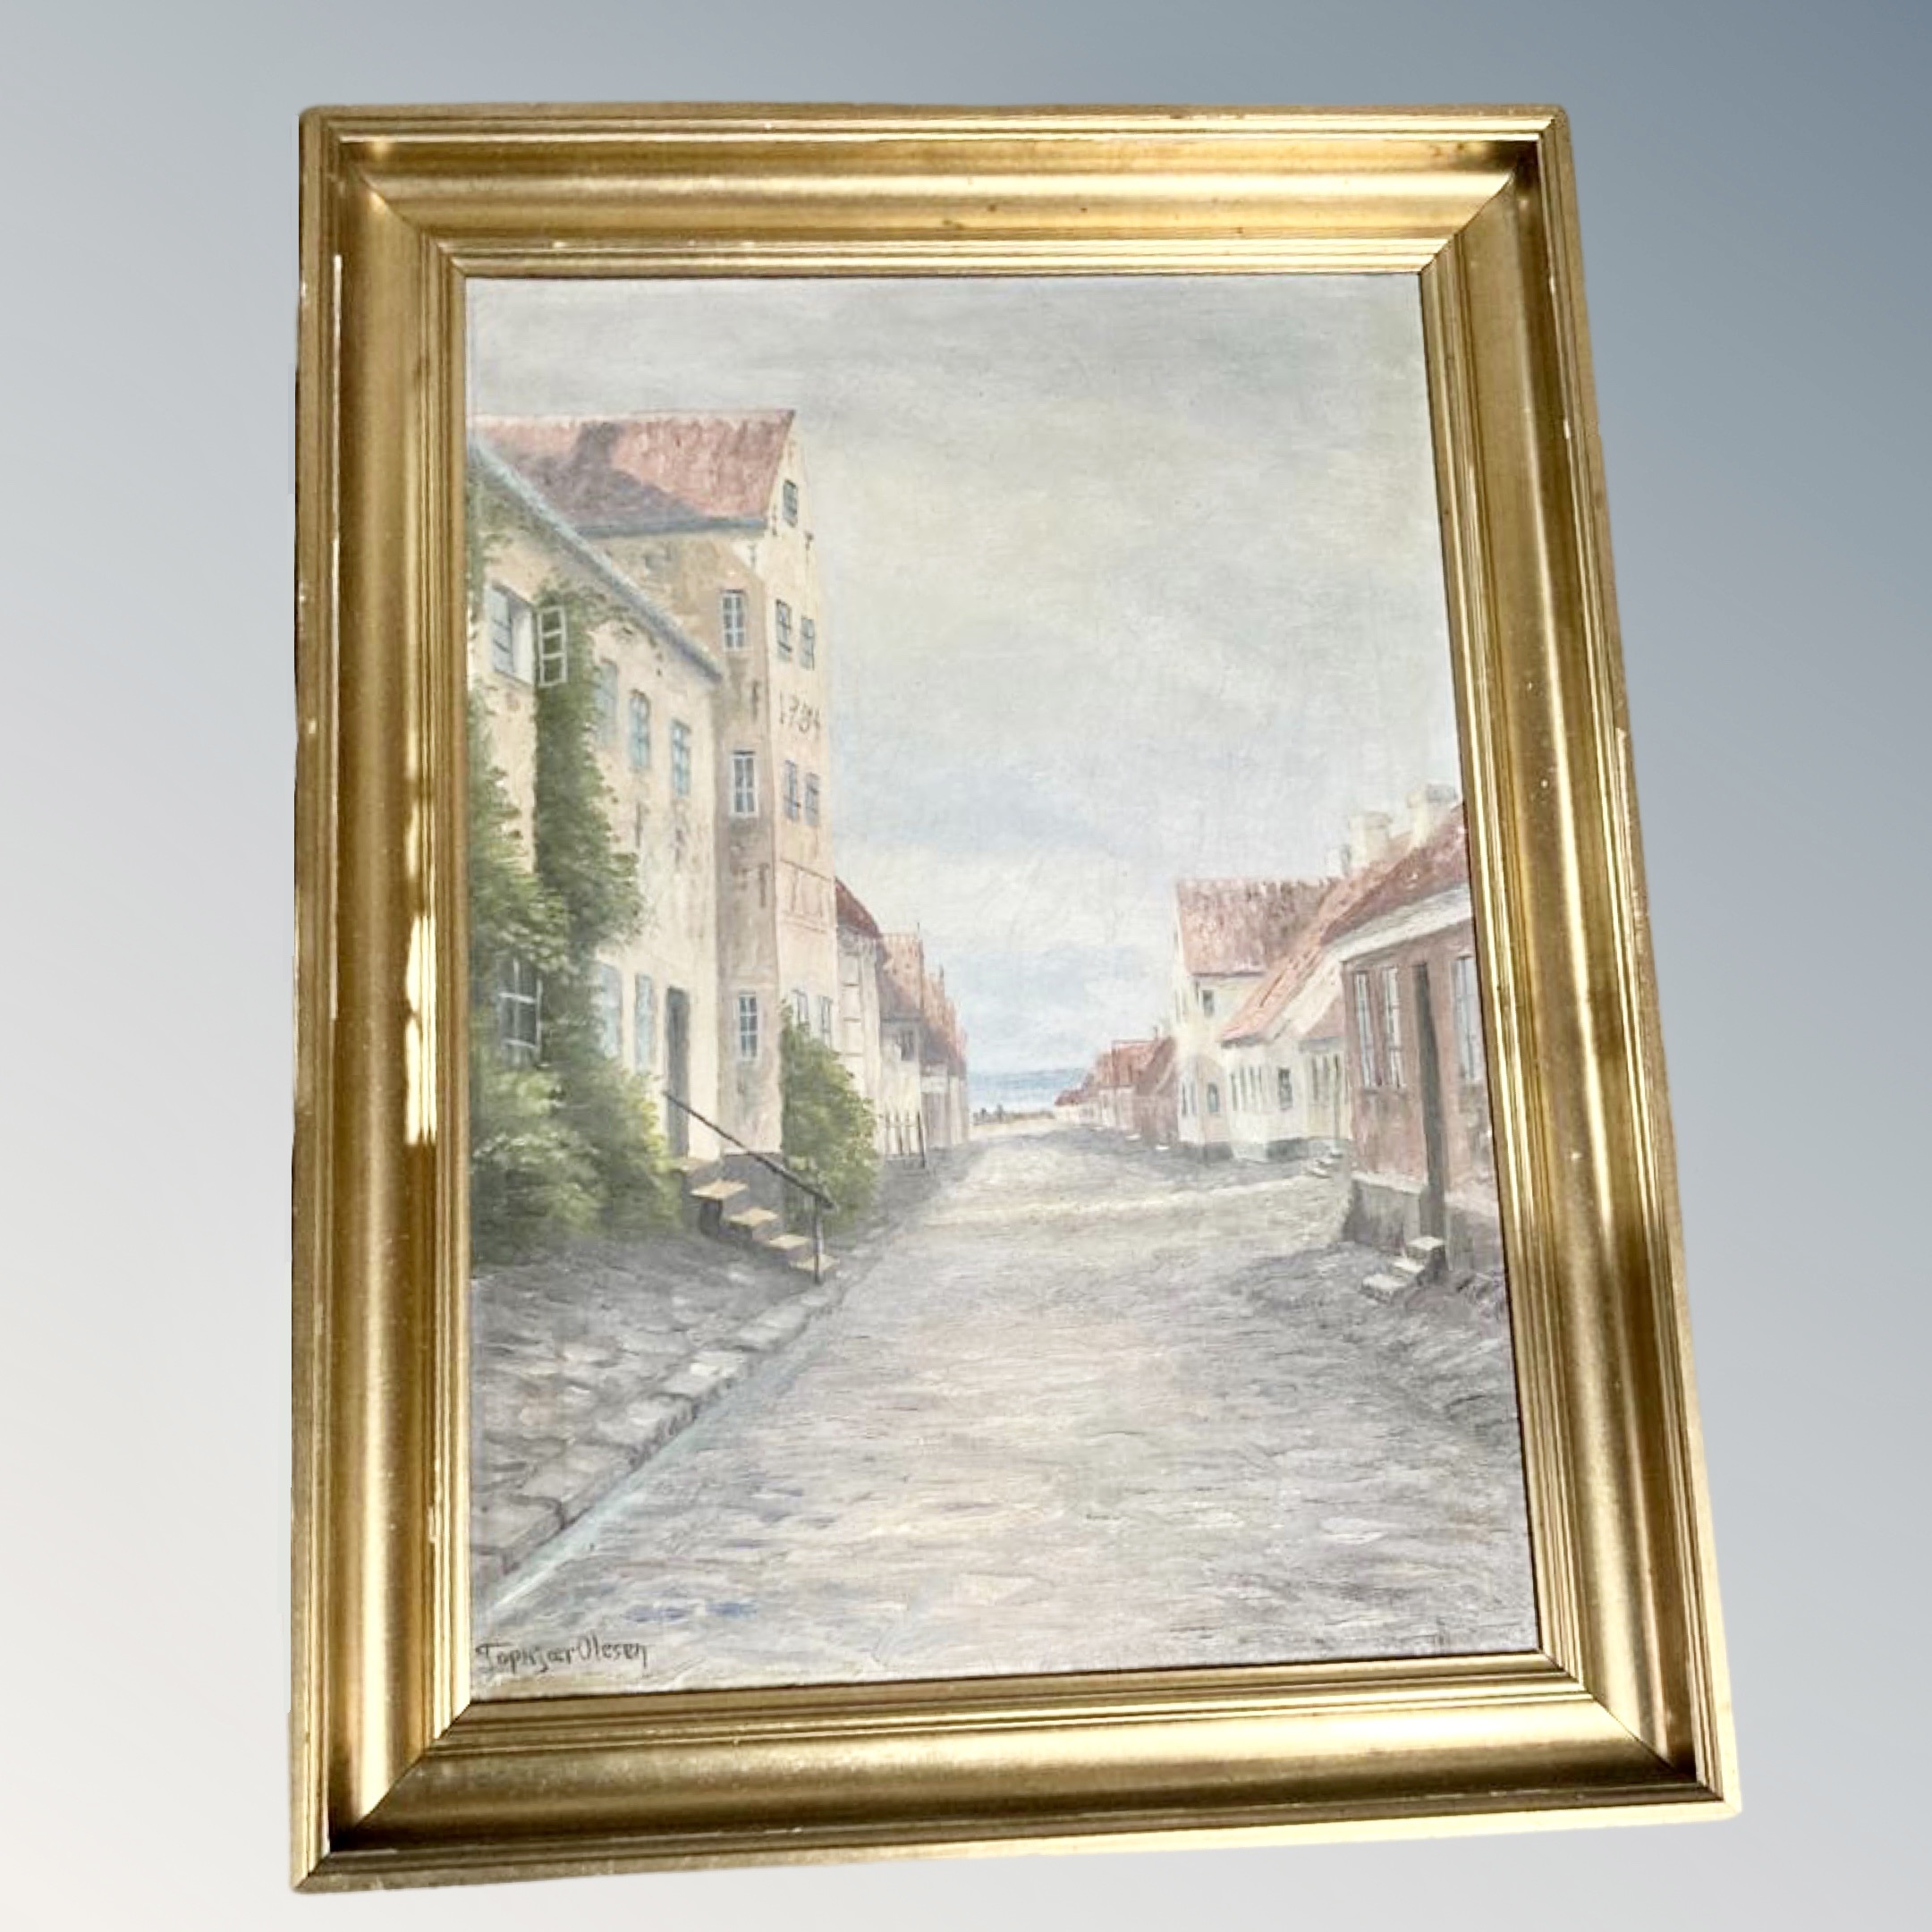 Topkjoer Olesen : View towards a coast, oil on canvas, 63 cm x 45 cm. Framed.